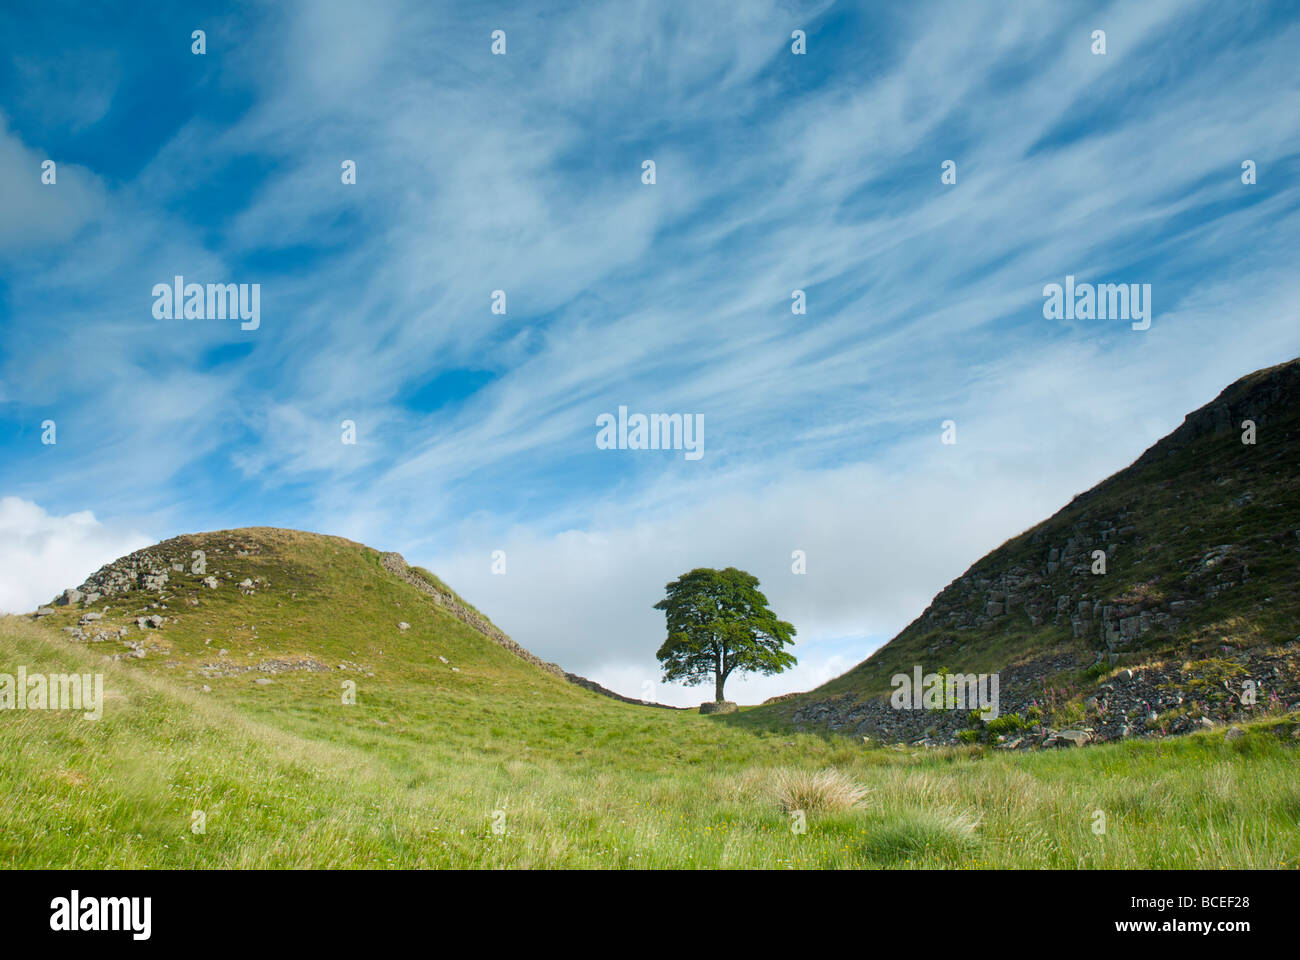 Brecha de sicomoro, acero Rigg, el Muro de Adriano, el Parque Nacional de Northumberland, Inglaterra Foto de stock